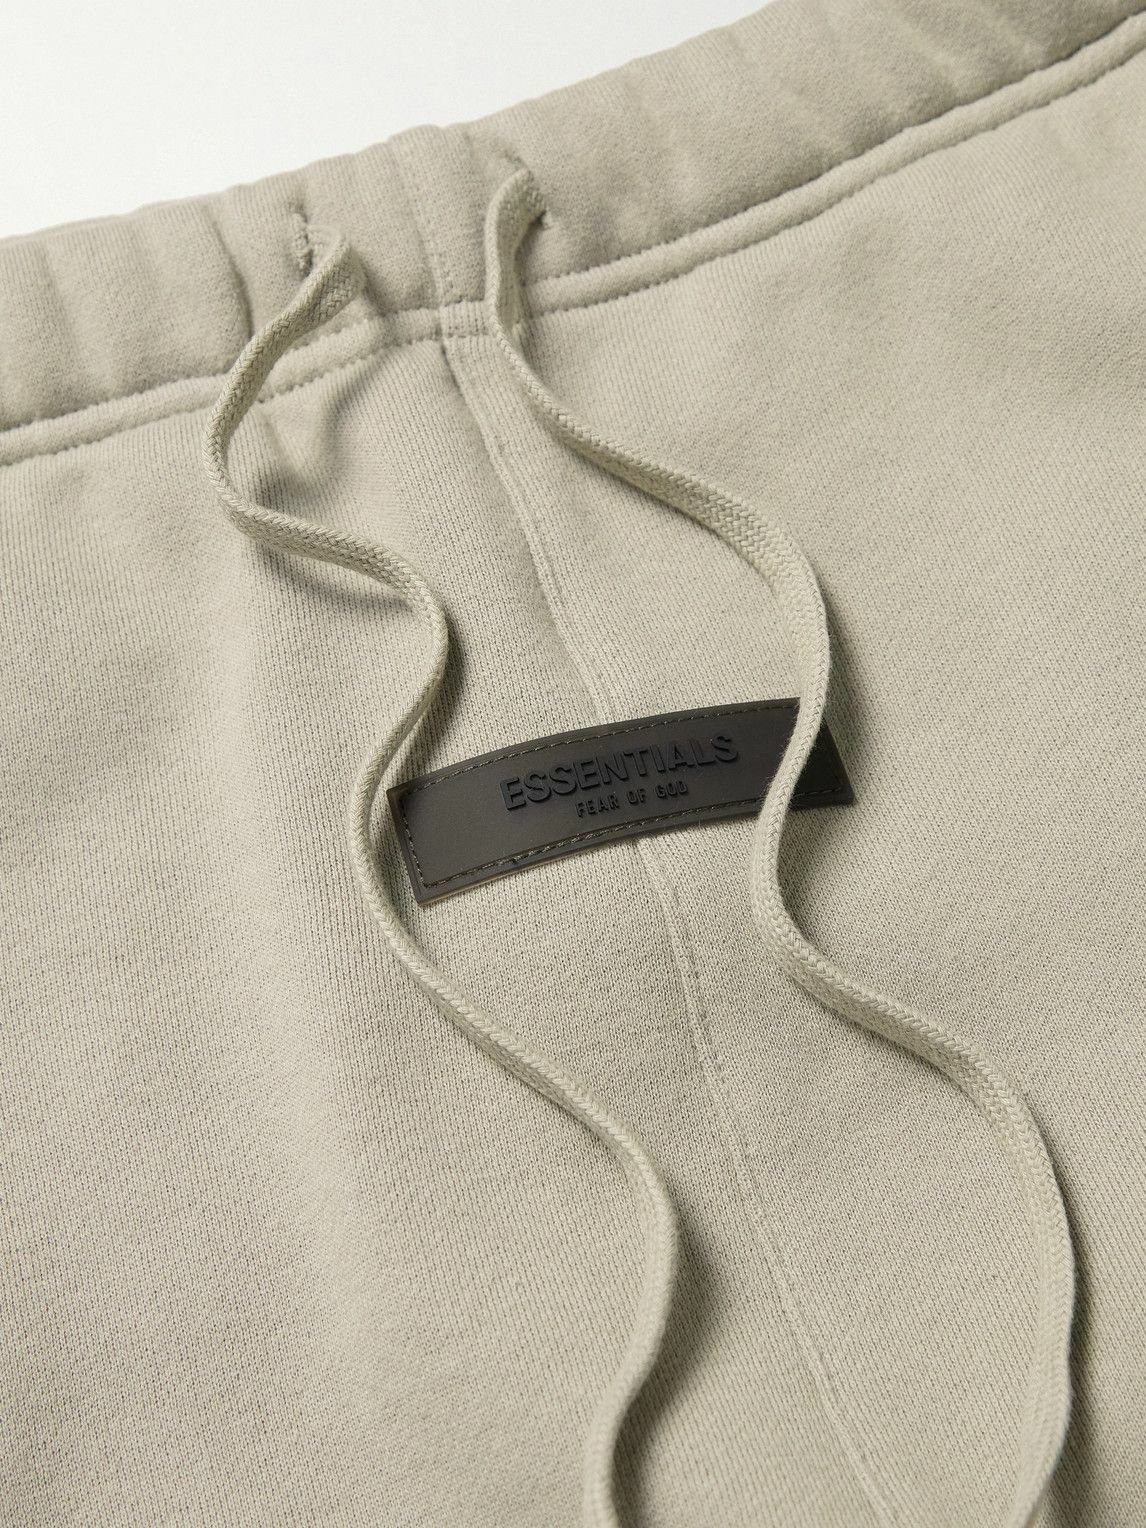 FEAR OF GOD ESSENTIALS - Logo-Appliquéd Cotton-Blend Jersey Sweatpants ...